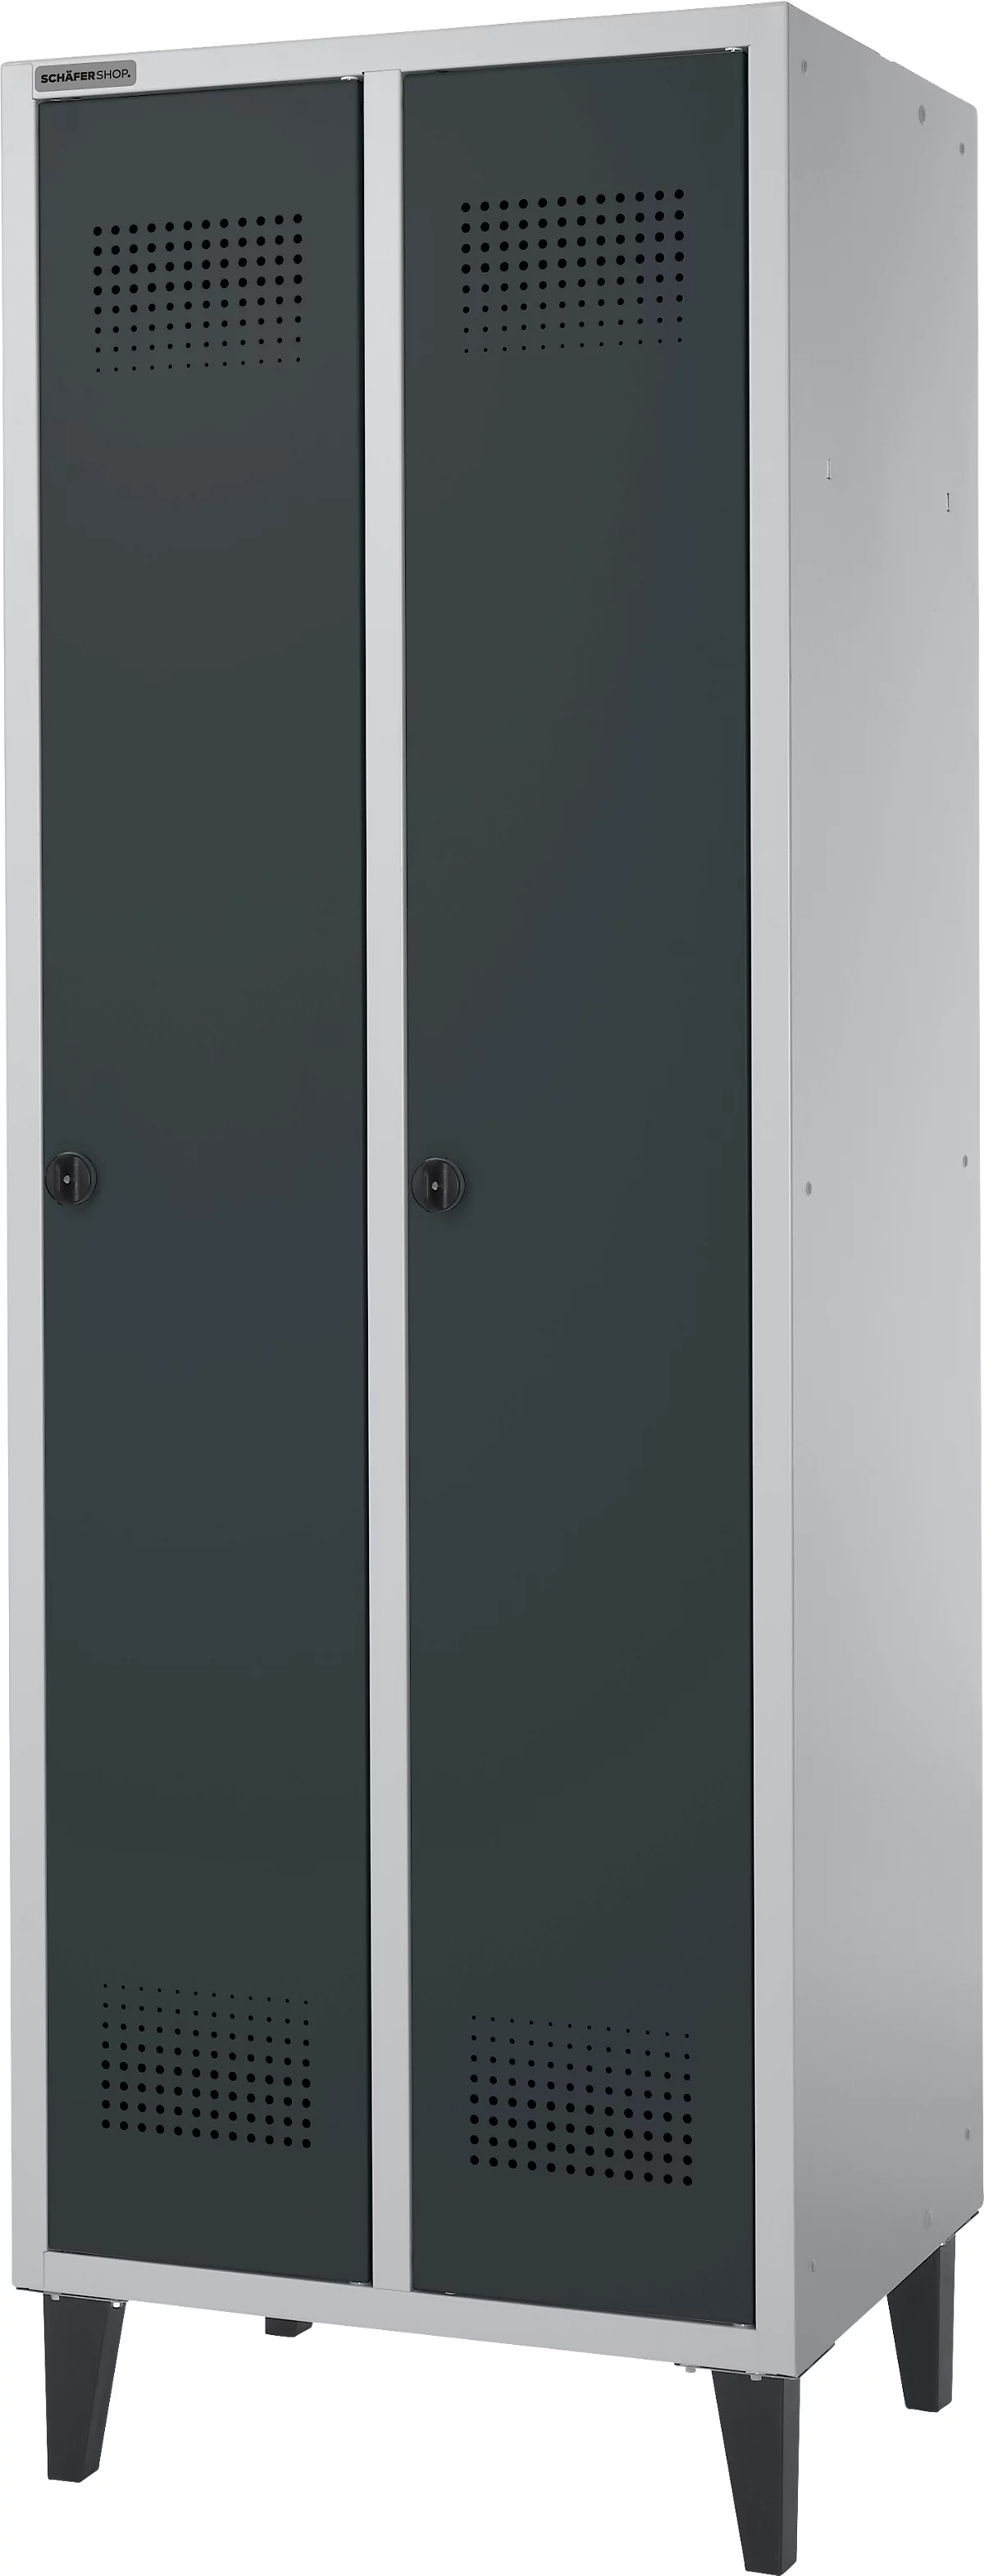 Schäfer Shop Genius Armario vestidor, 2 compartimentos, ancho 630 x fondo 500 x alto 1850 mm, cierre de leva, aluminio blanco RAL 9016/antracita